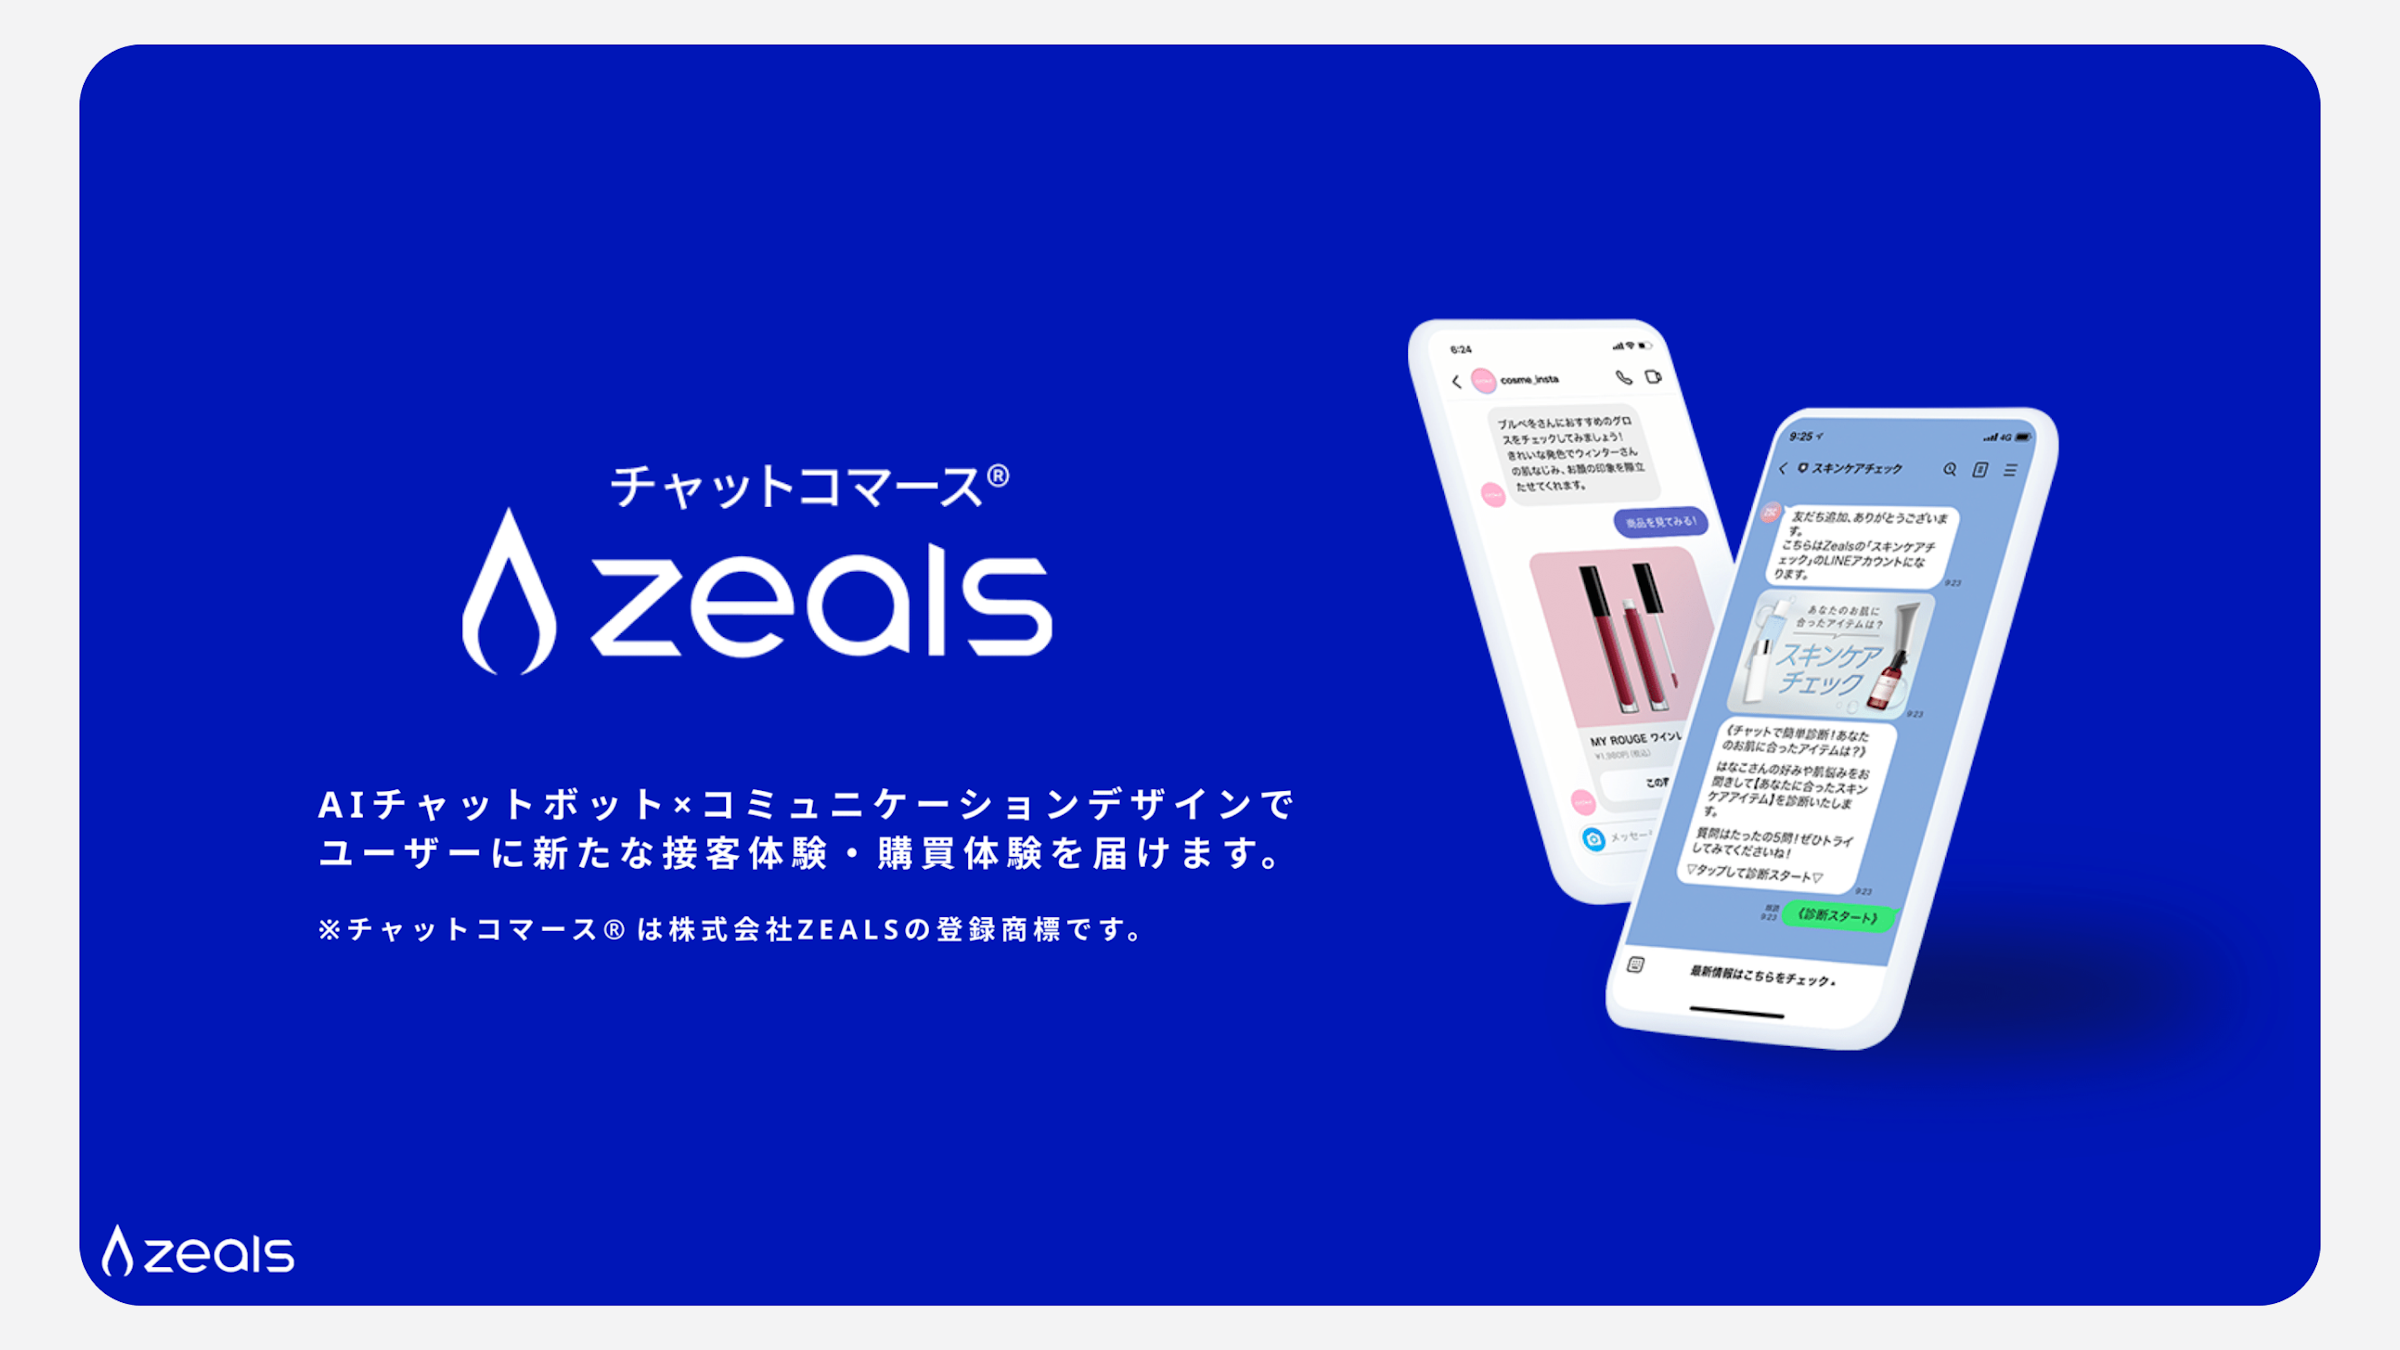 チャットコマースZEALS。AIチャットボット×コミュニケーションデザインで、ユーザーに新たな接客体験・購買体験を届けます。チャットコマース®は株式会社ZEALSの登録商標です。